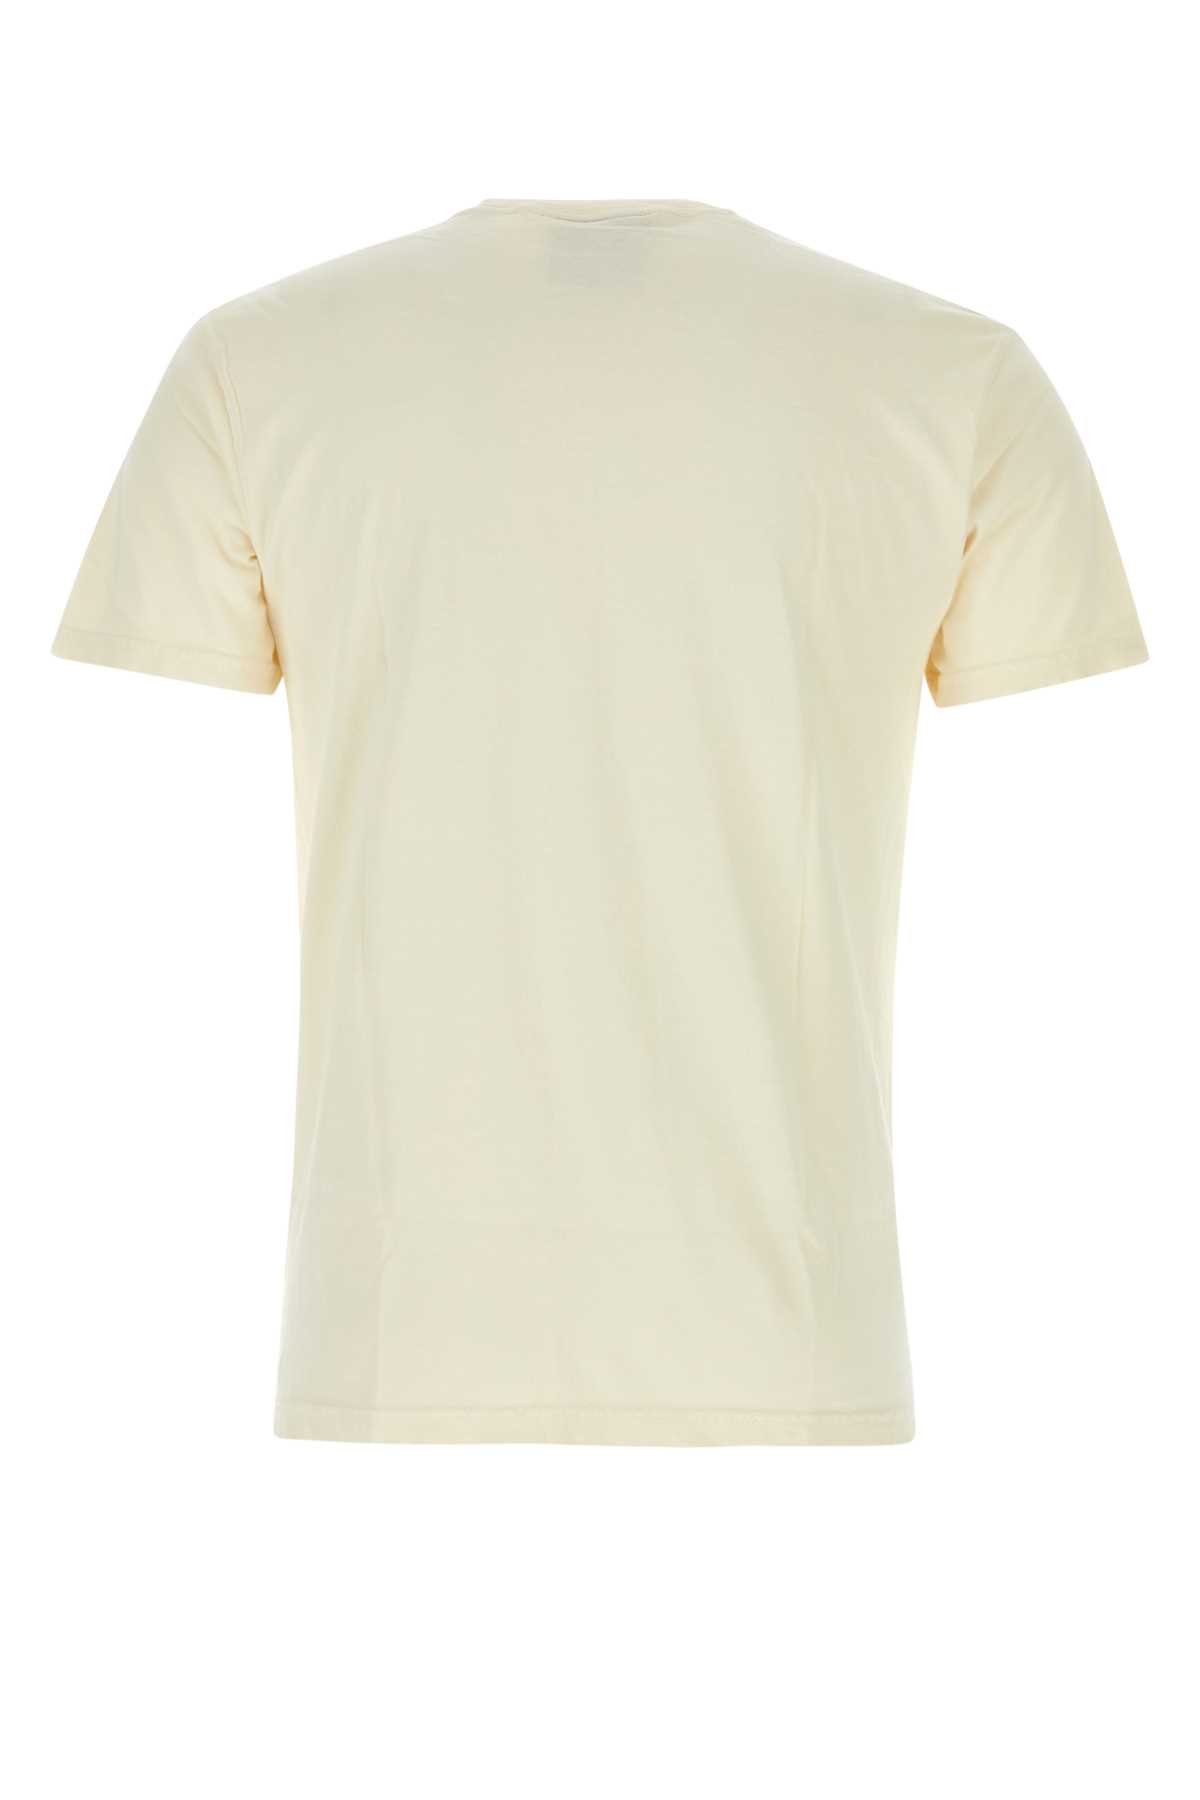 Kidsuper Cream Cotton T-shirt